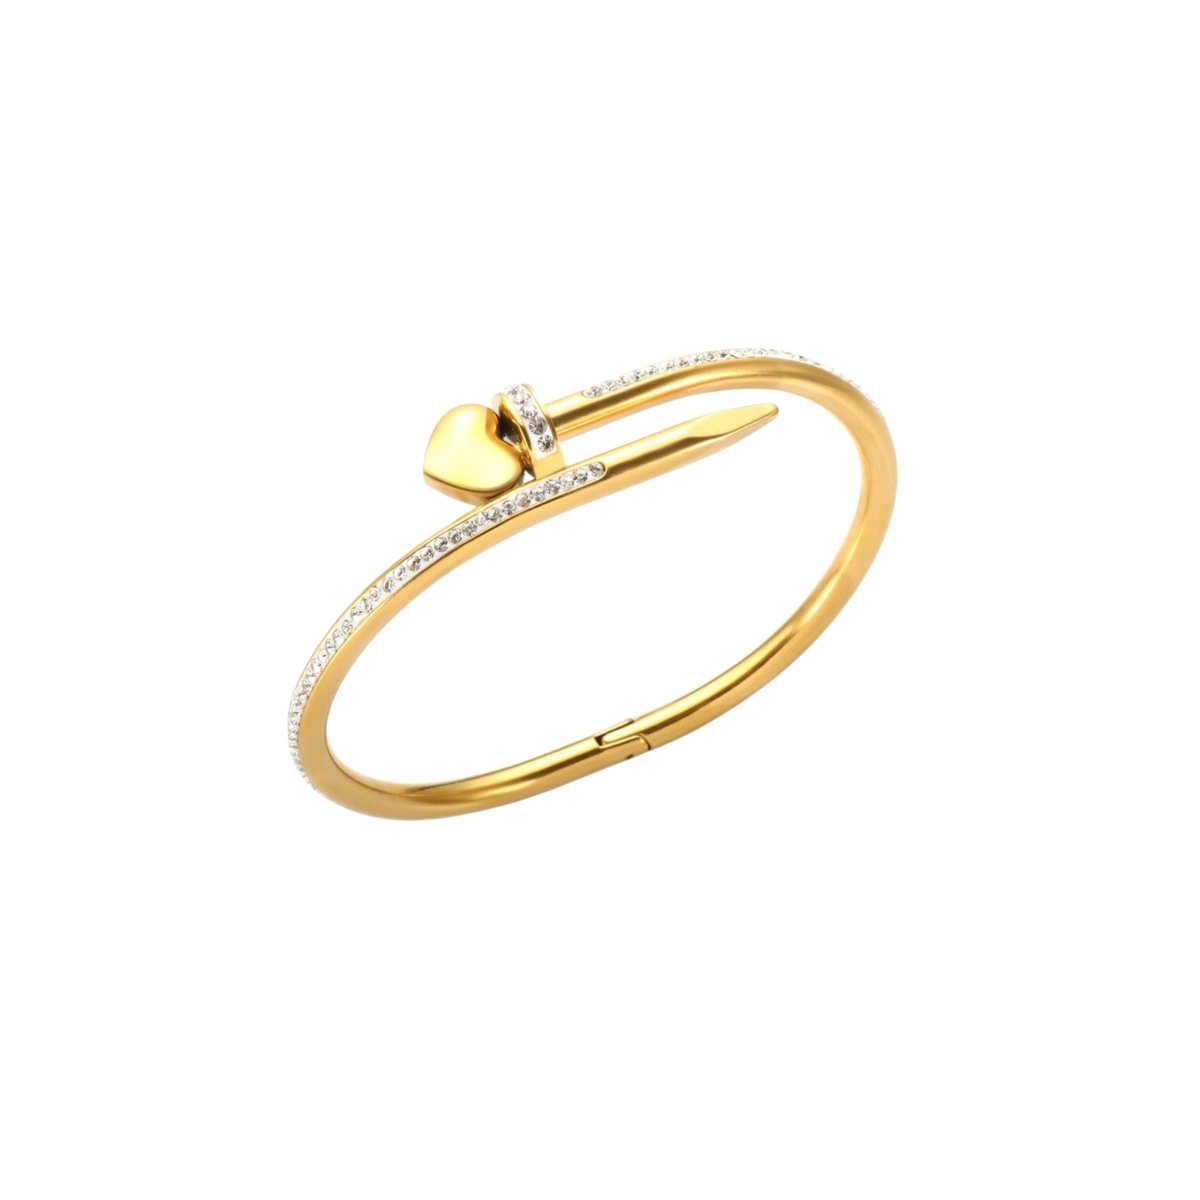 Bracelete Prego Cravejado Zircônia Banhado em Ouro 18K - Murano Joias